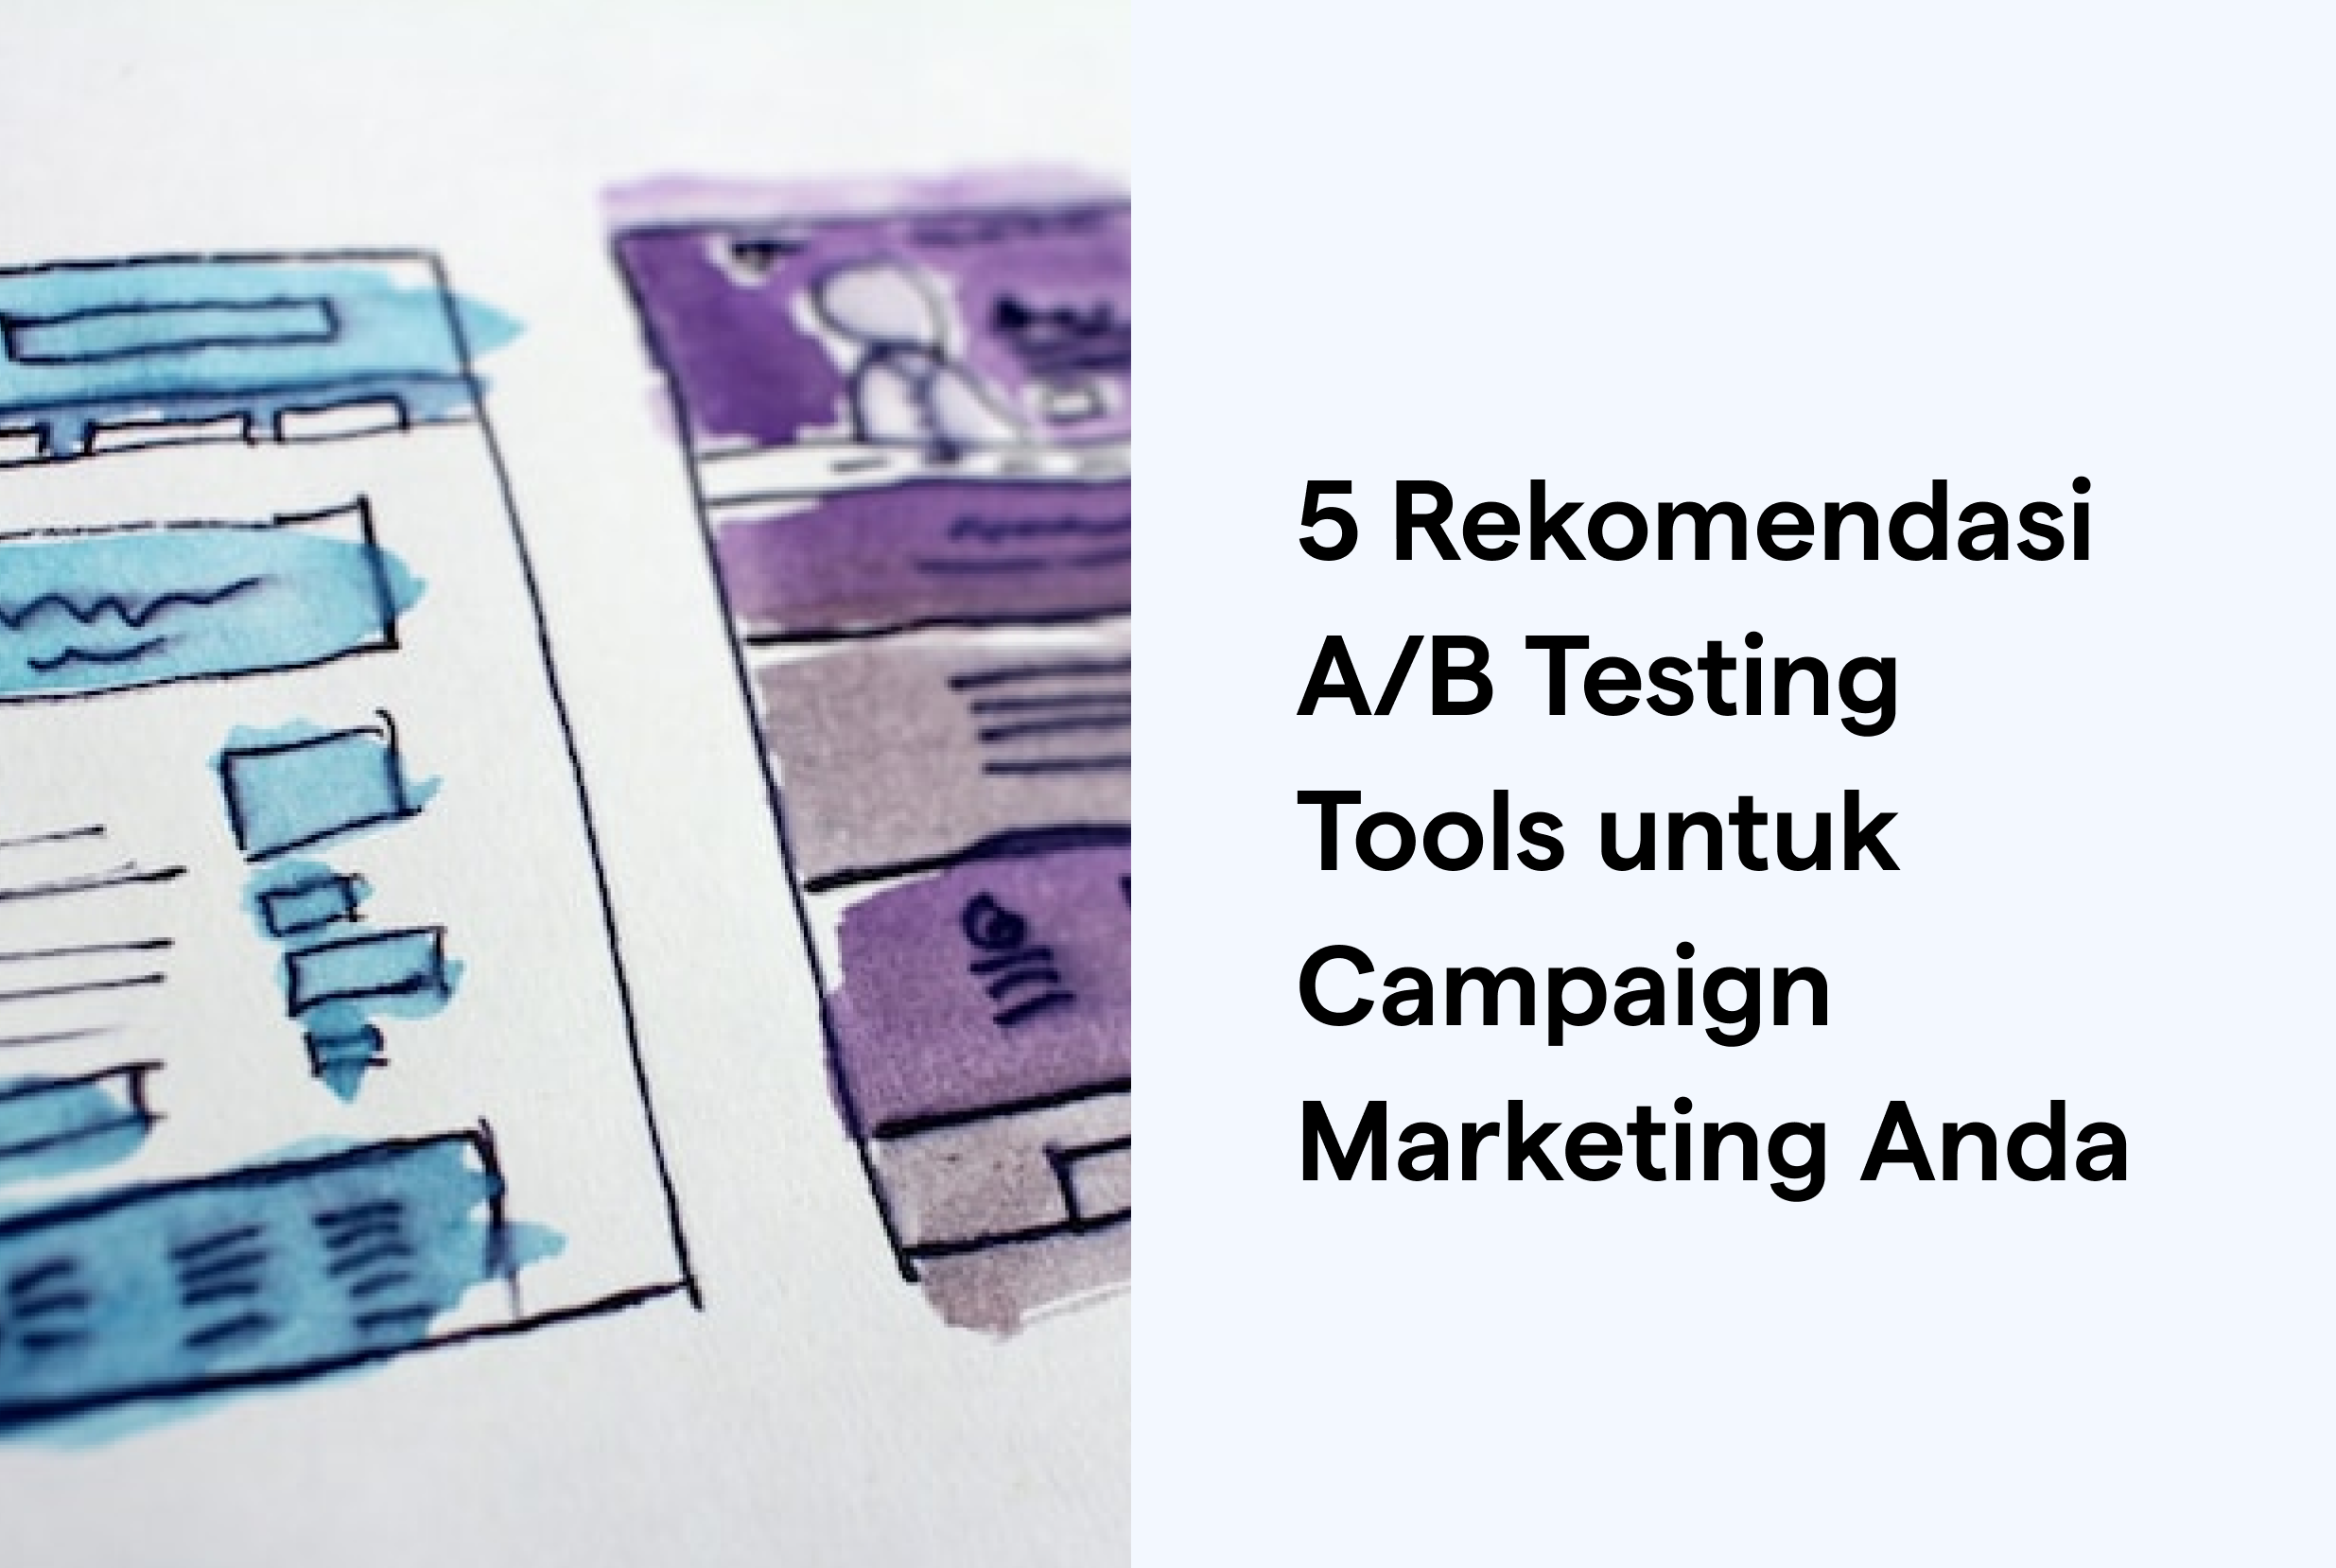 5 Rekomendasi A/B Testing Tools untuk Campaign Marketing Anda